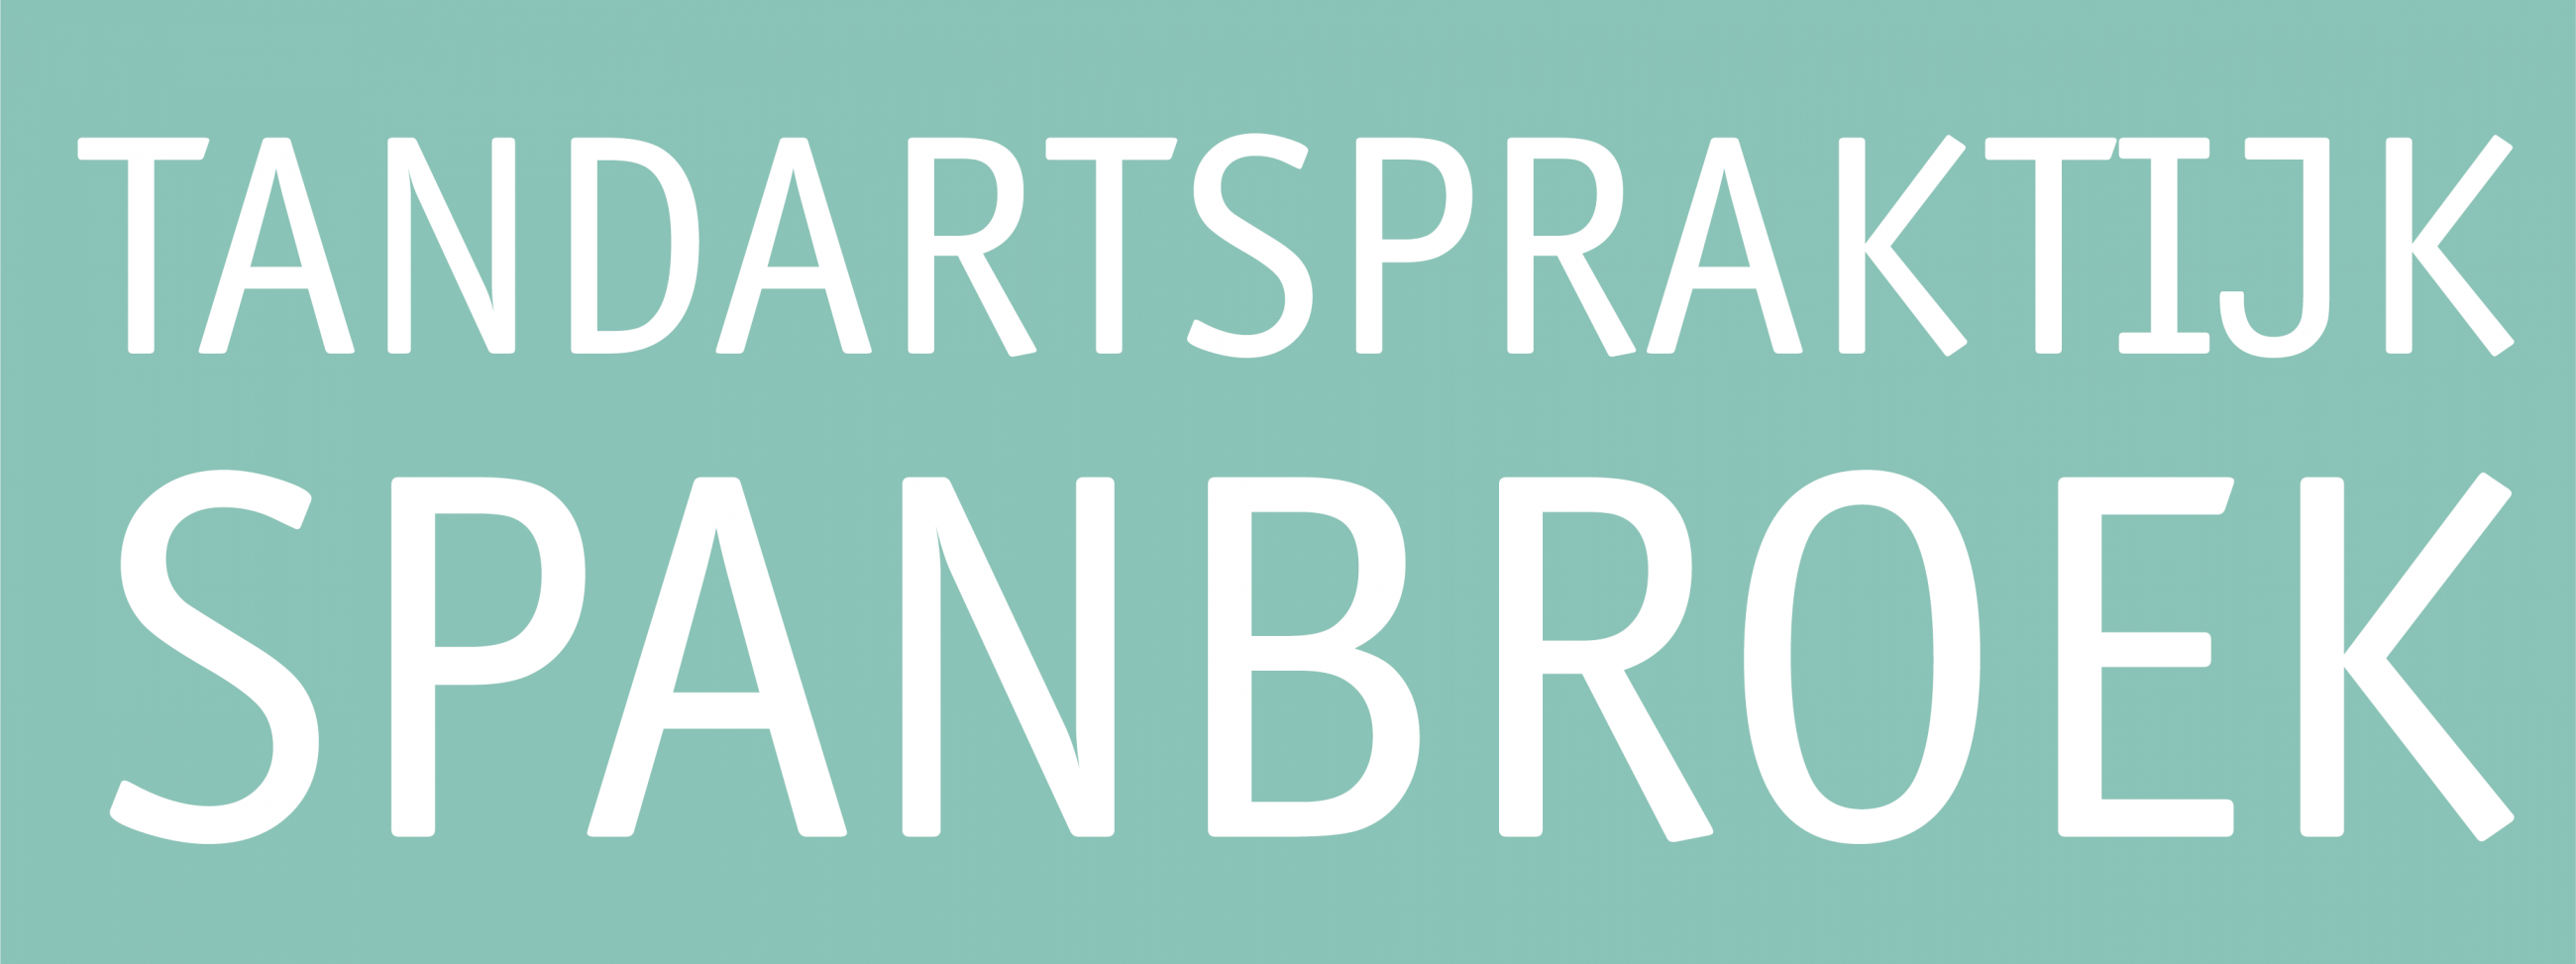 logo Tandartspraktijk Spanbroek 